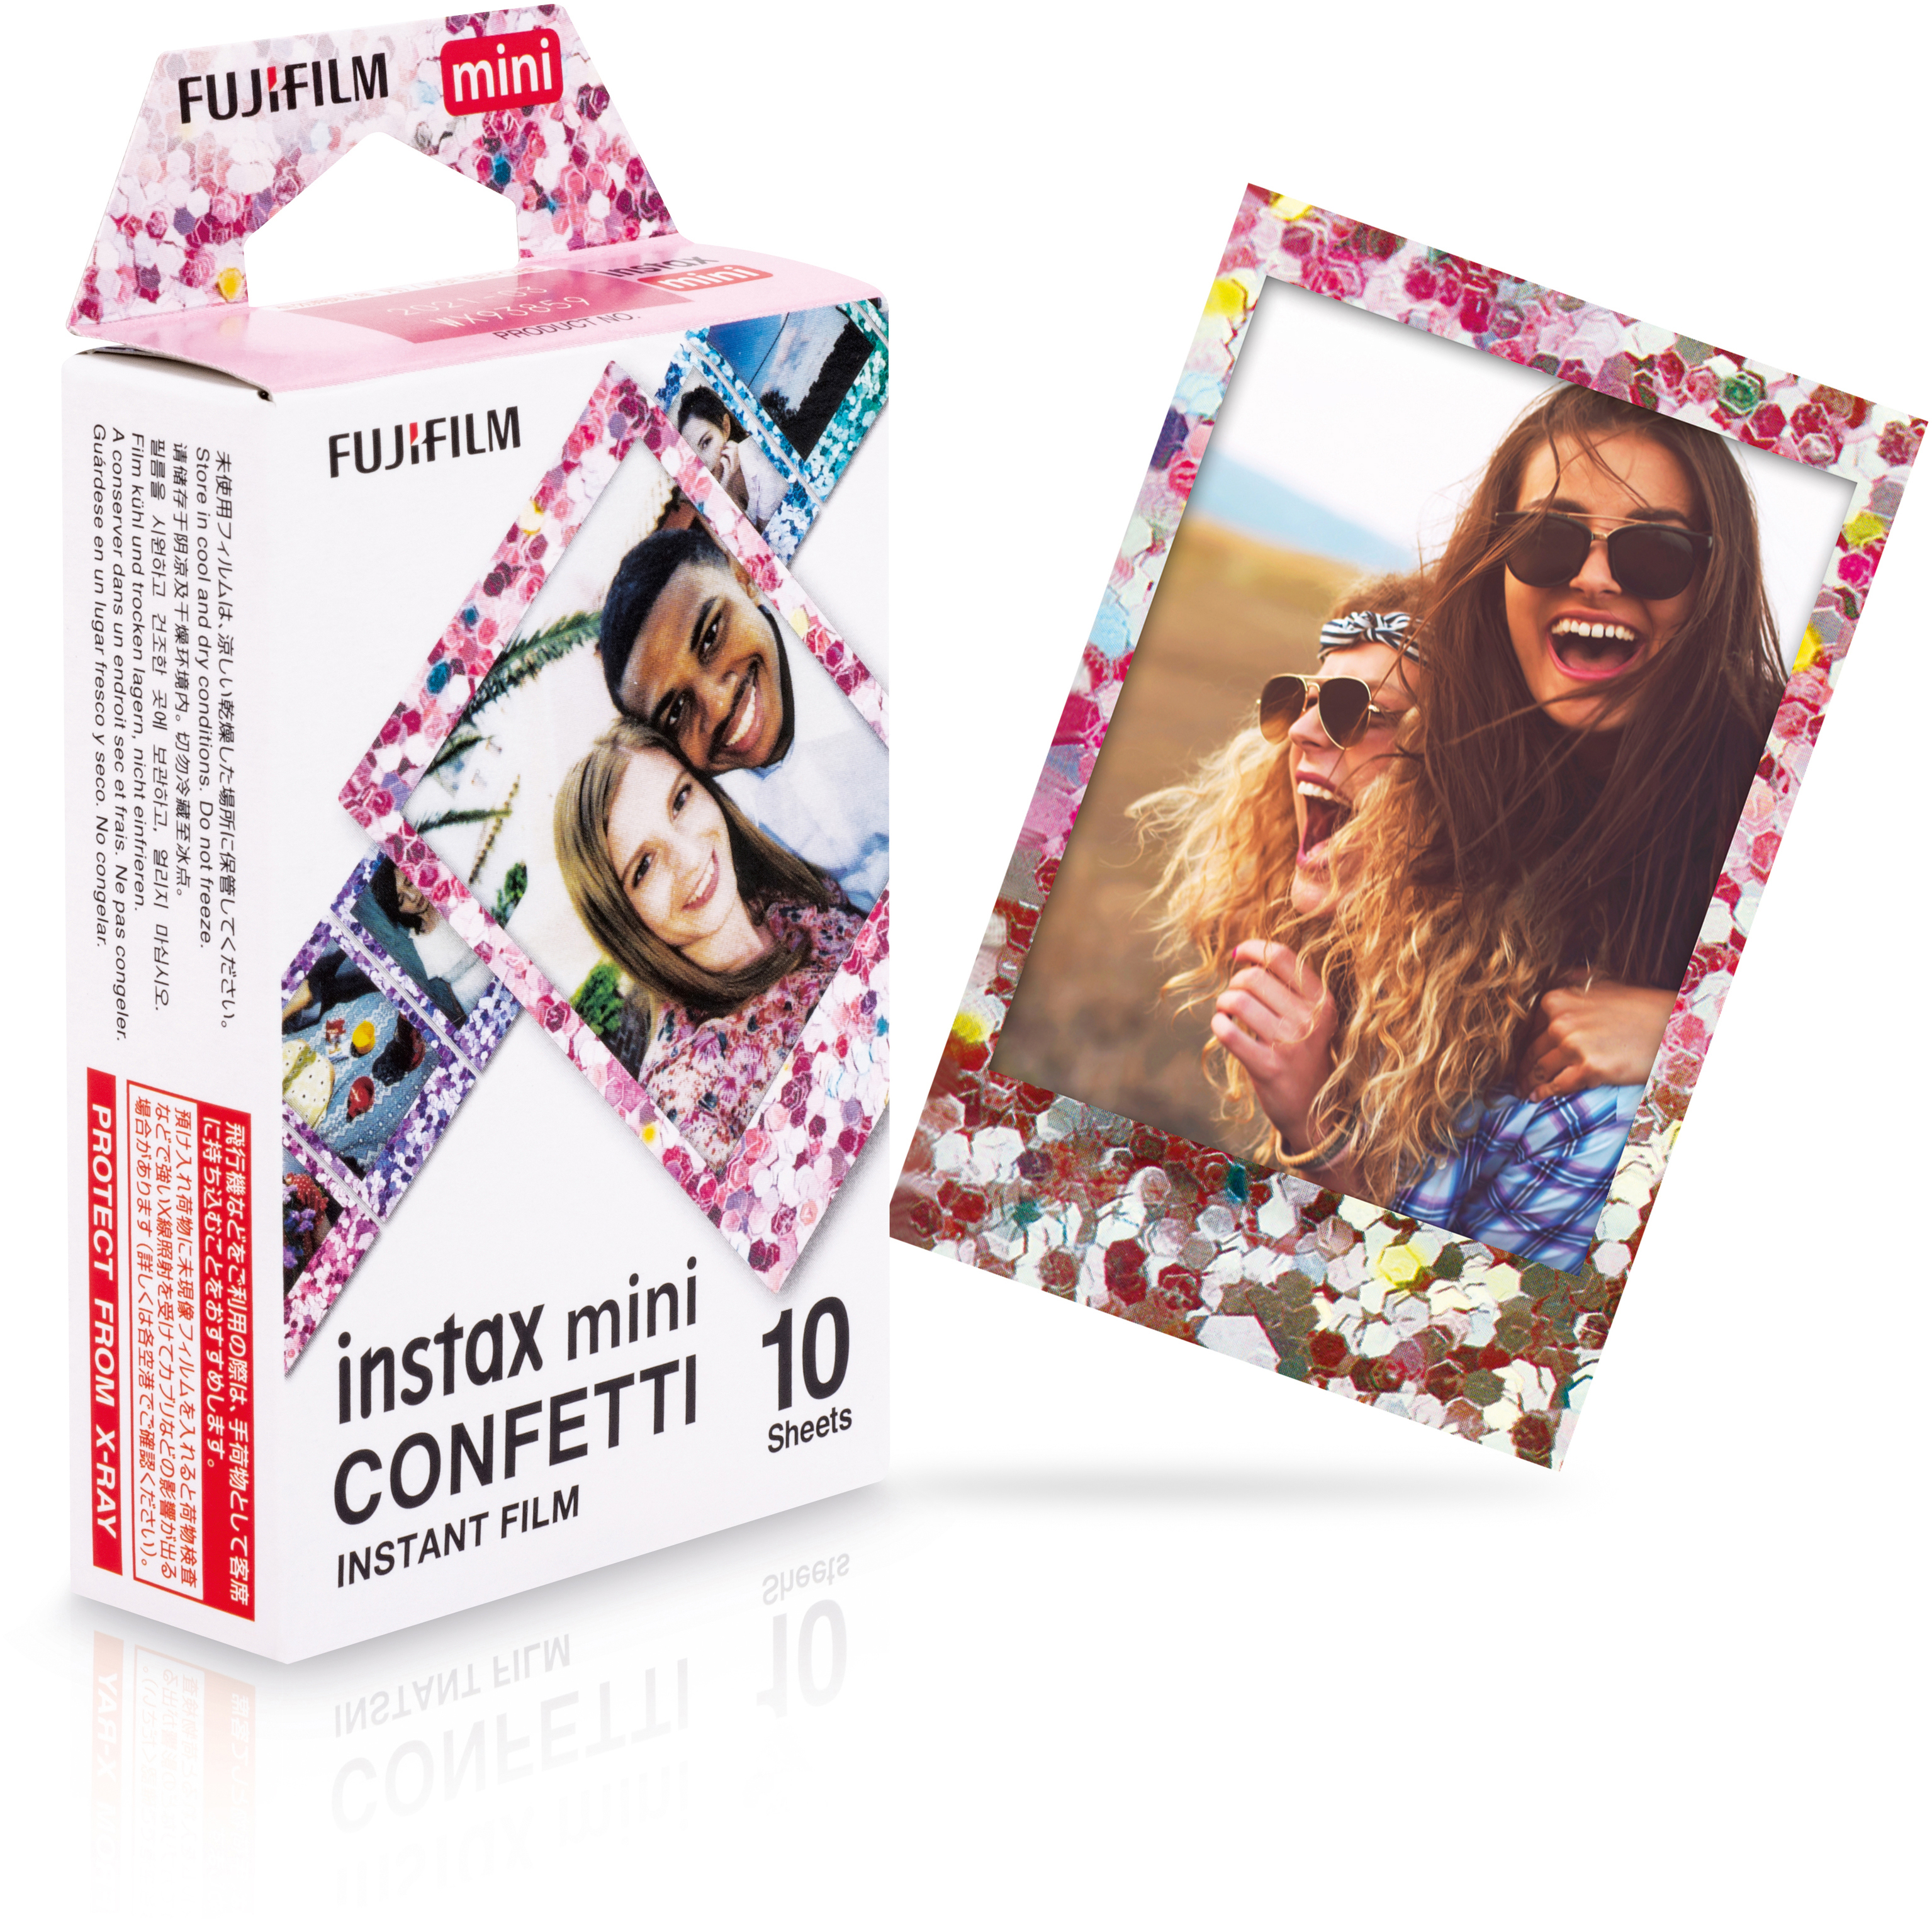 Film instax FUJIFILM Film mini Confetti